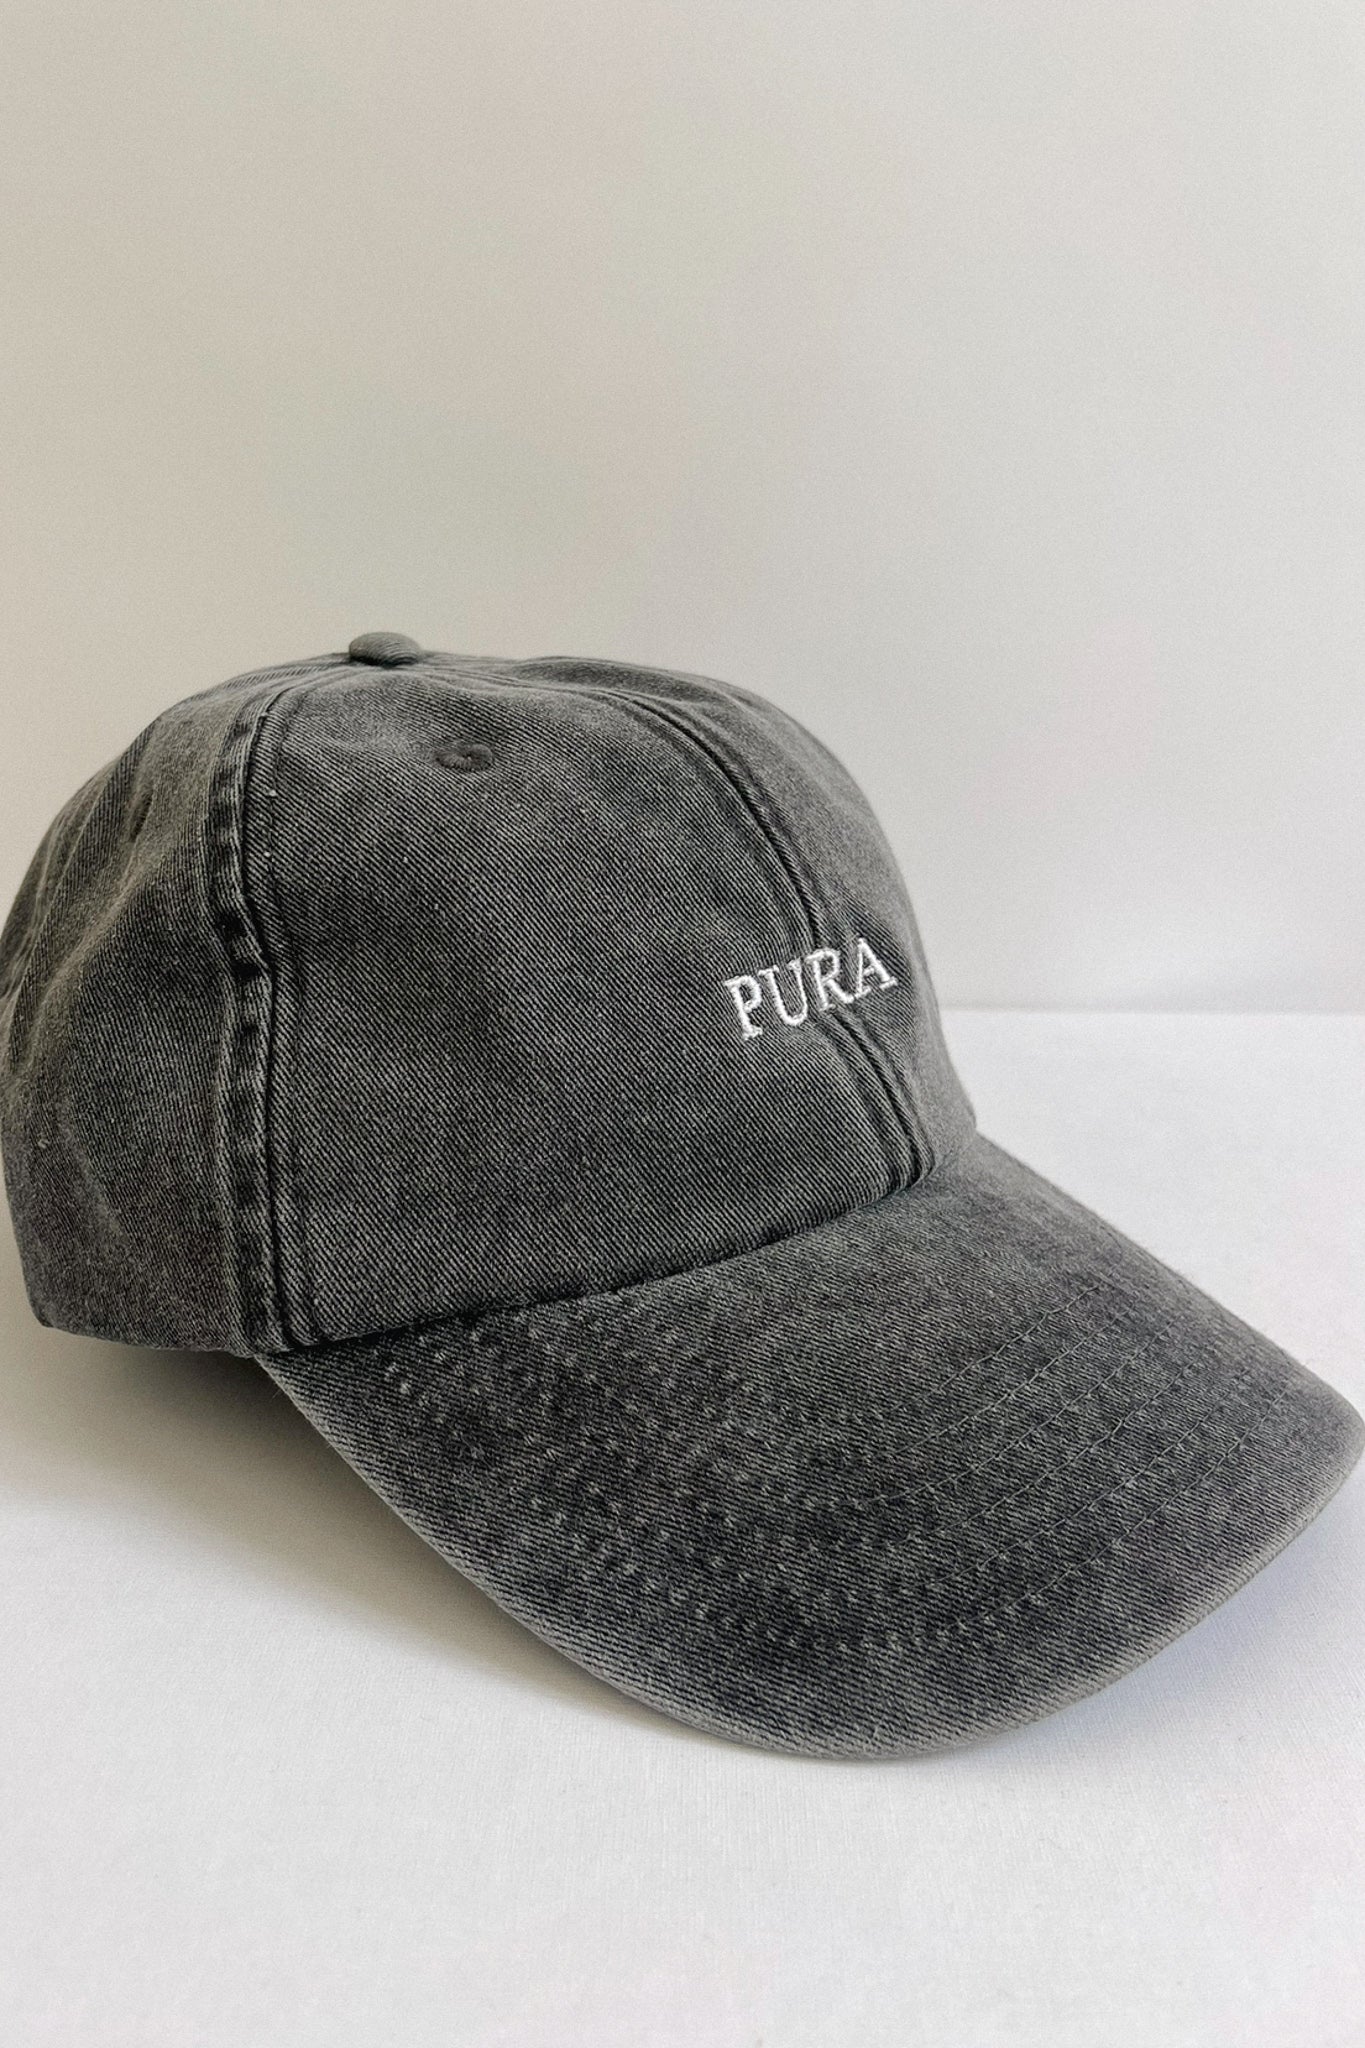 THE PURA CAP BLACK